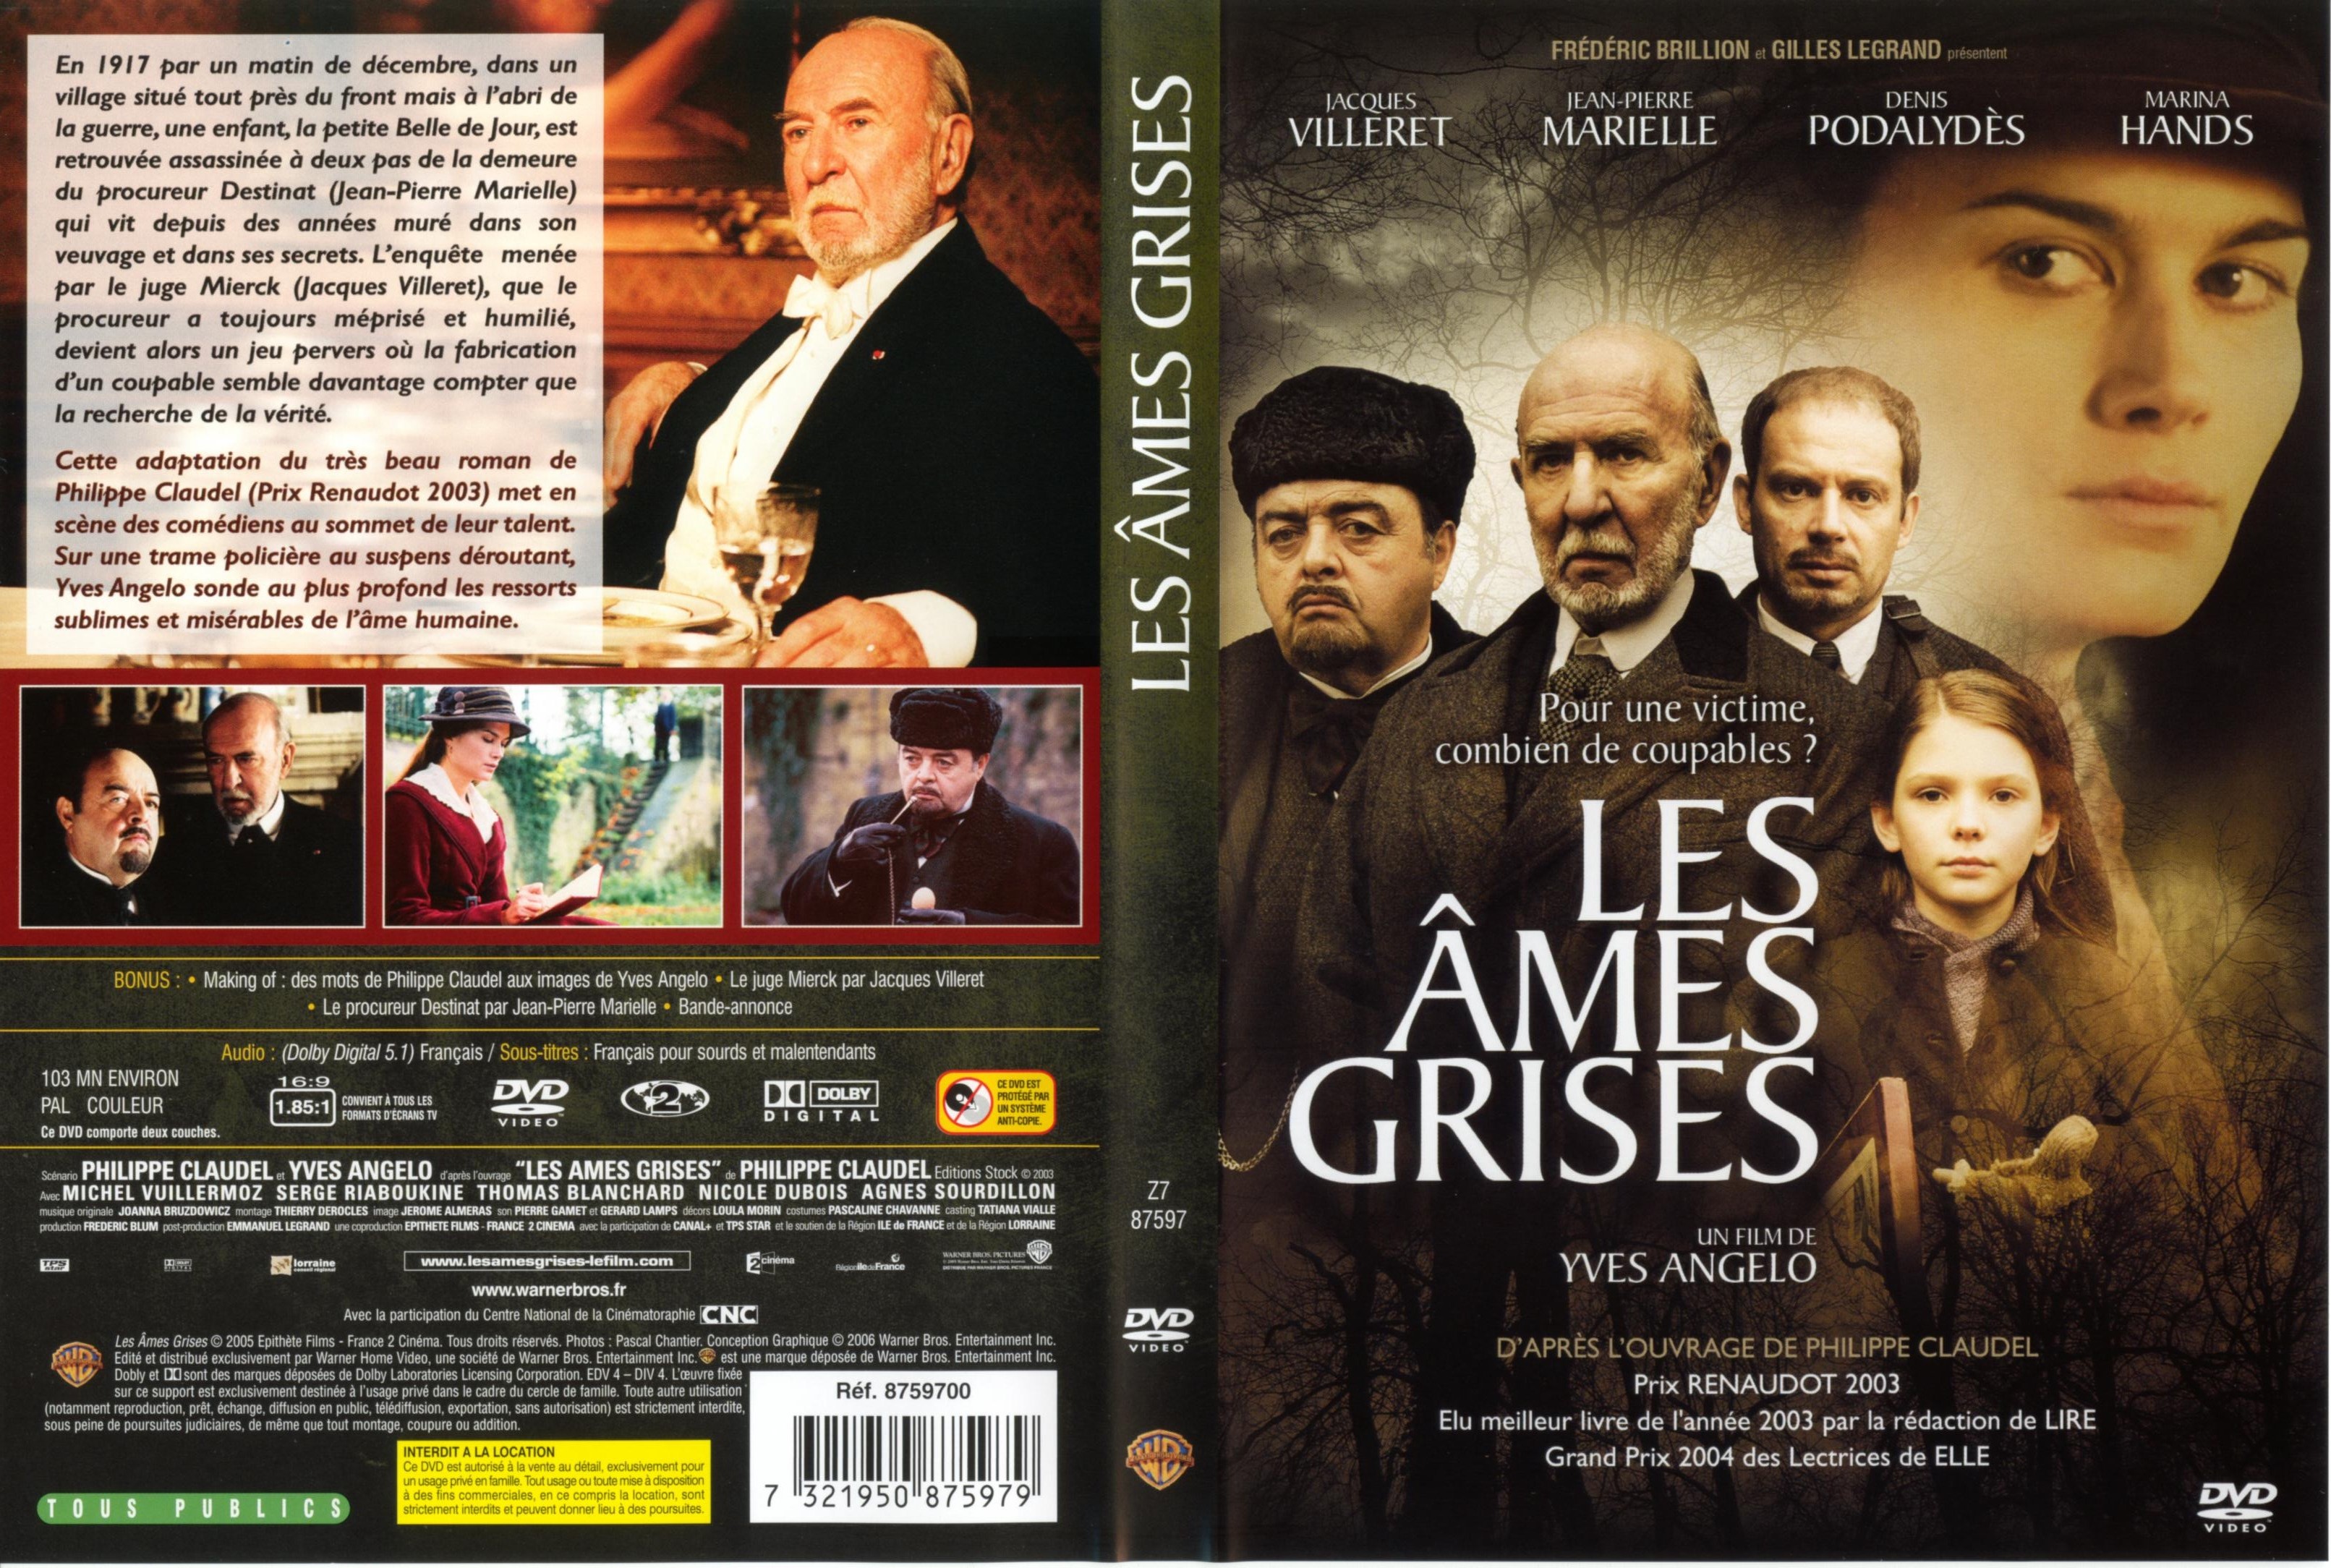 Jaquette DVD Les ames grises v2